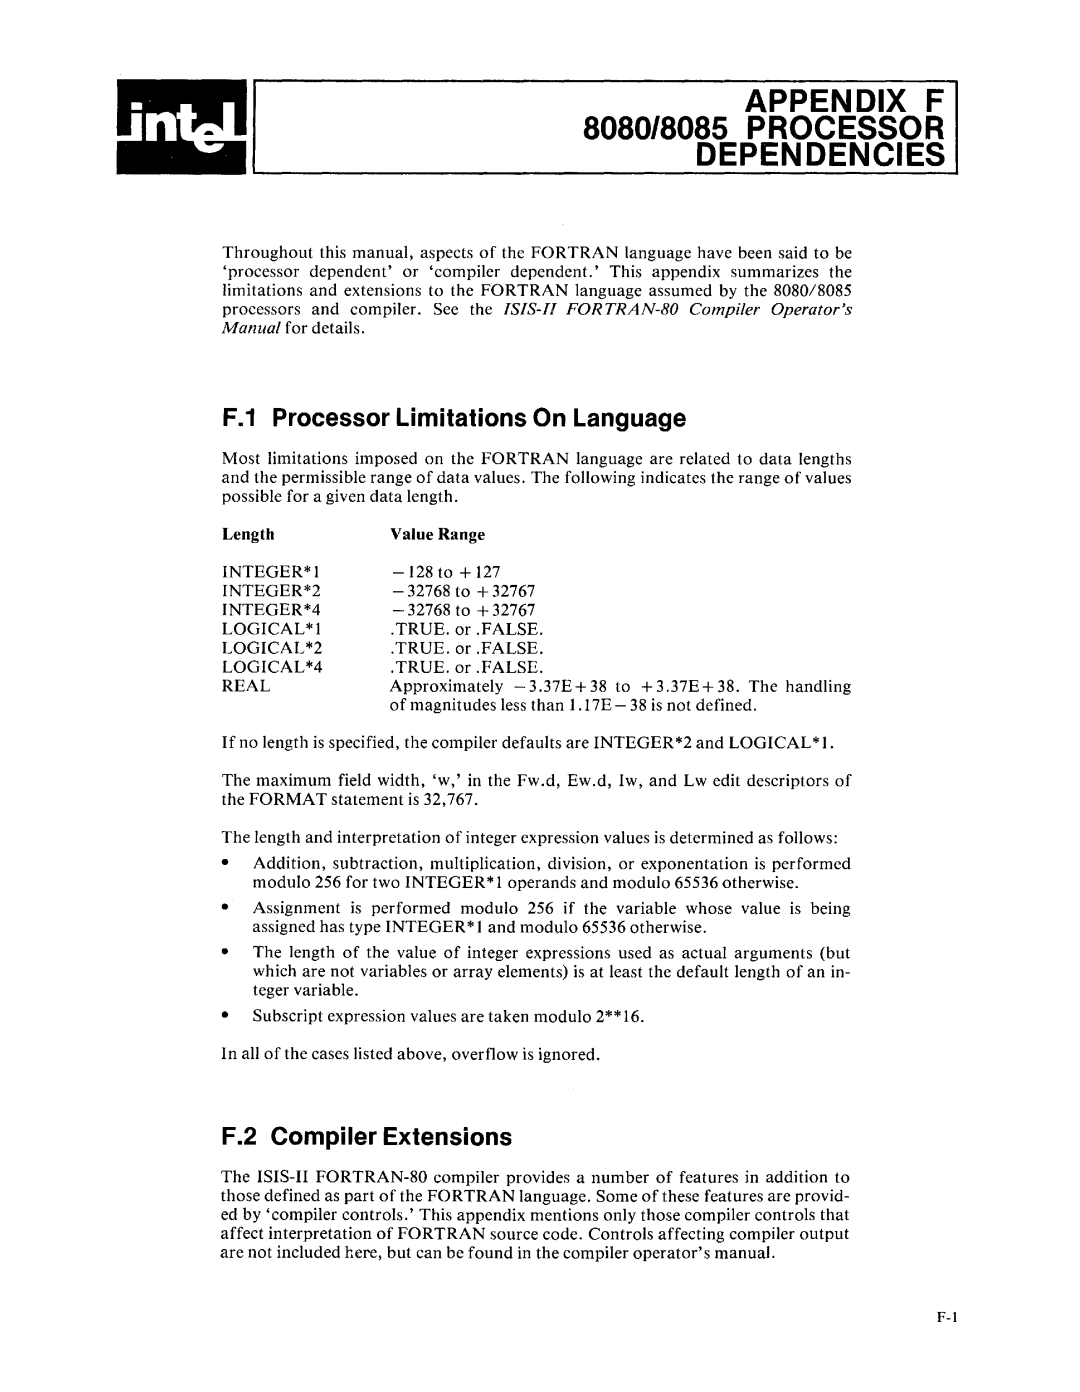 Intel fortran-80 APPENDIX F 8080/8085 PROCESSOR DEPENDENCIES, F.1 Processor Limitations On Language, Length, Value Range 